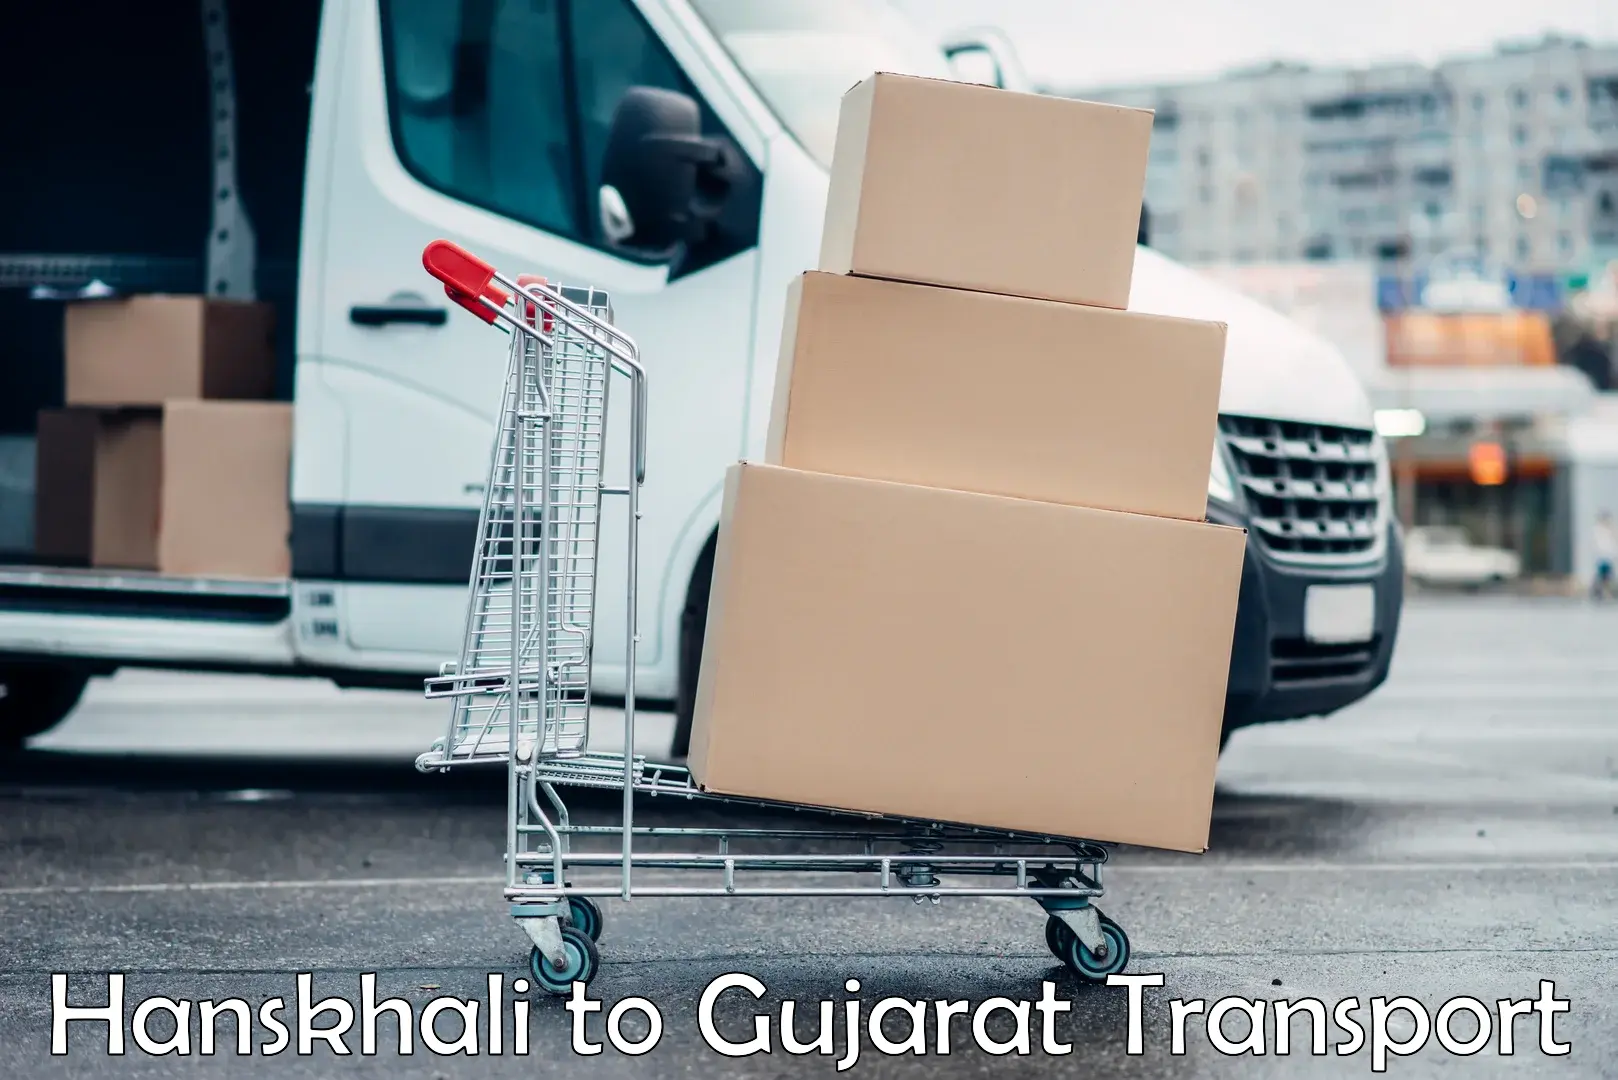 Transport in sharing Hanskhali to Gandhinagar